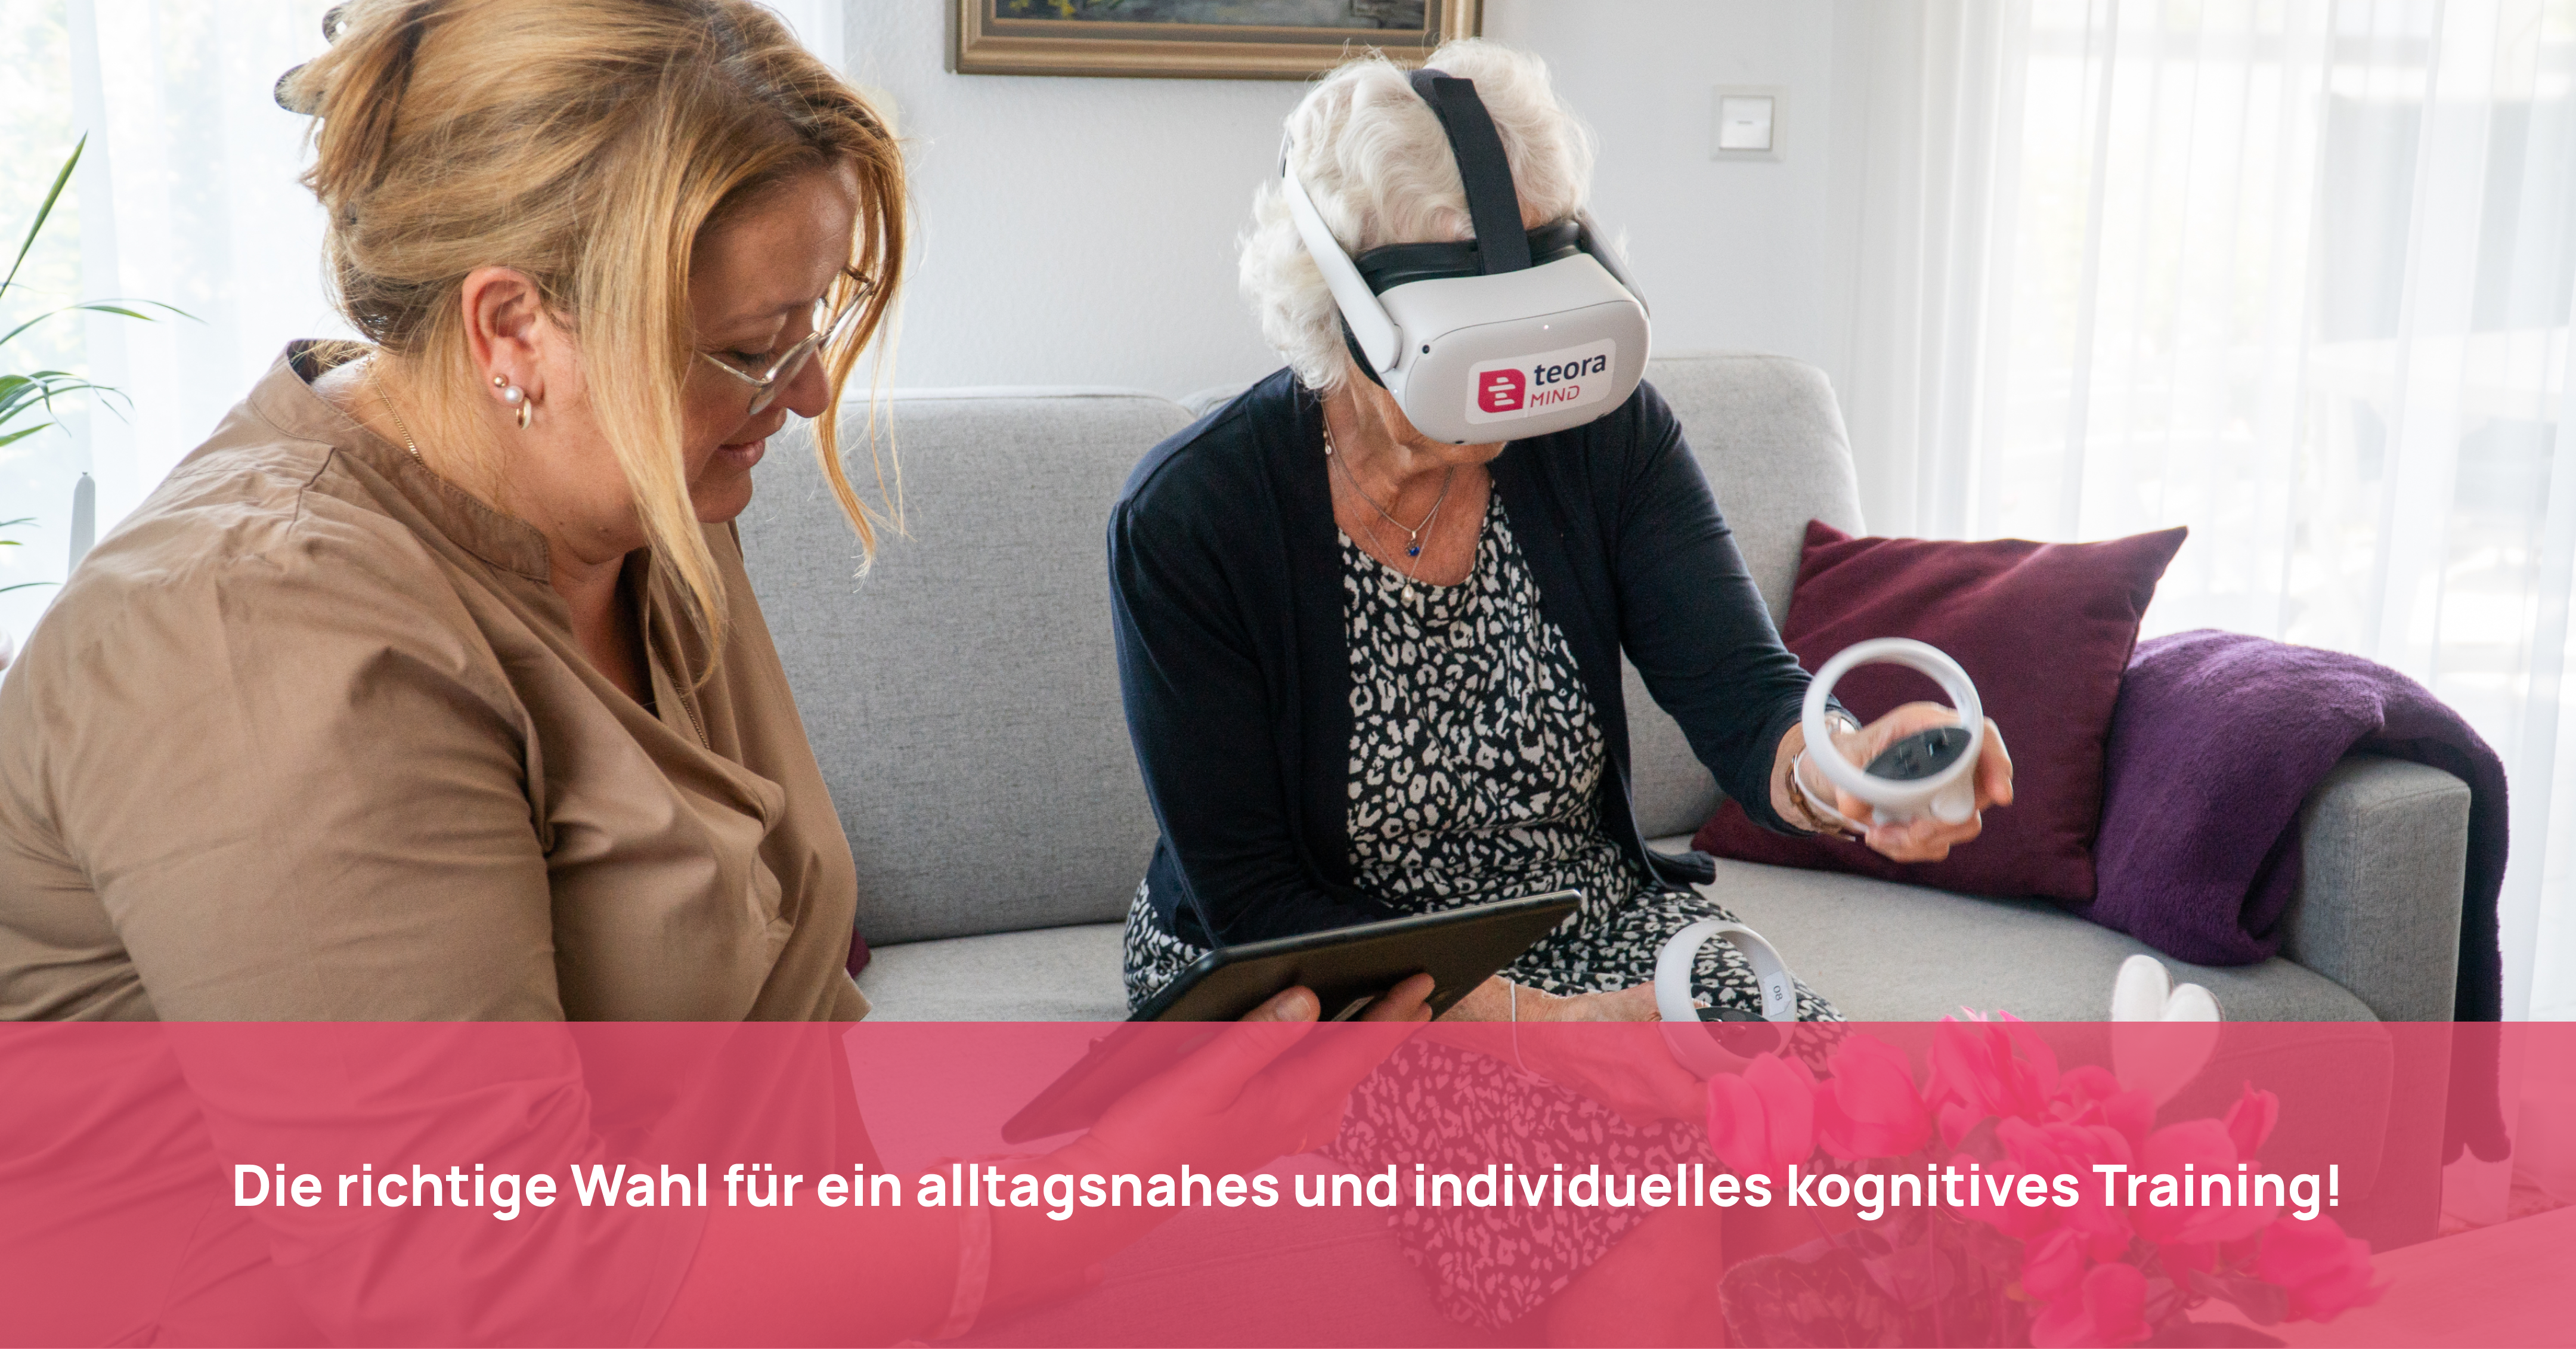 Seniorin sitzt auf dem Sofa und übt mit VR-Brille und Controllern